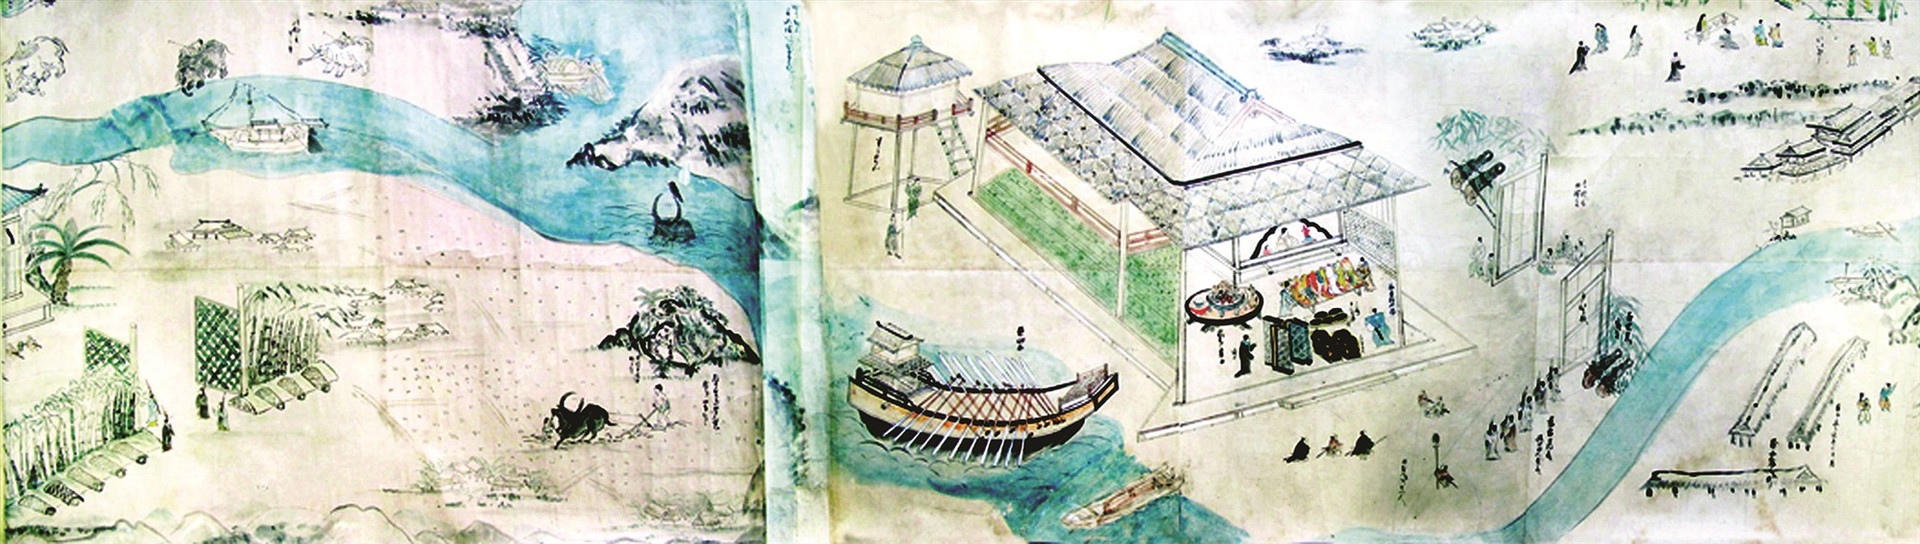 Thương nhân vào yết kiến tại Dinh trấn Thanh Chiêm vào thế kỷ 17. Ảnh tư liệu